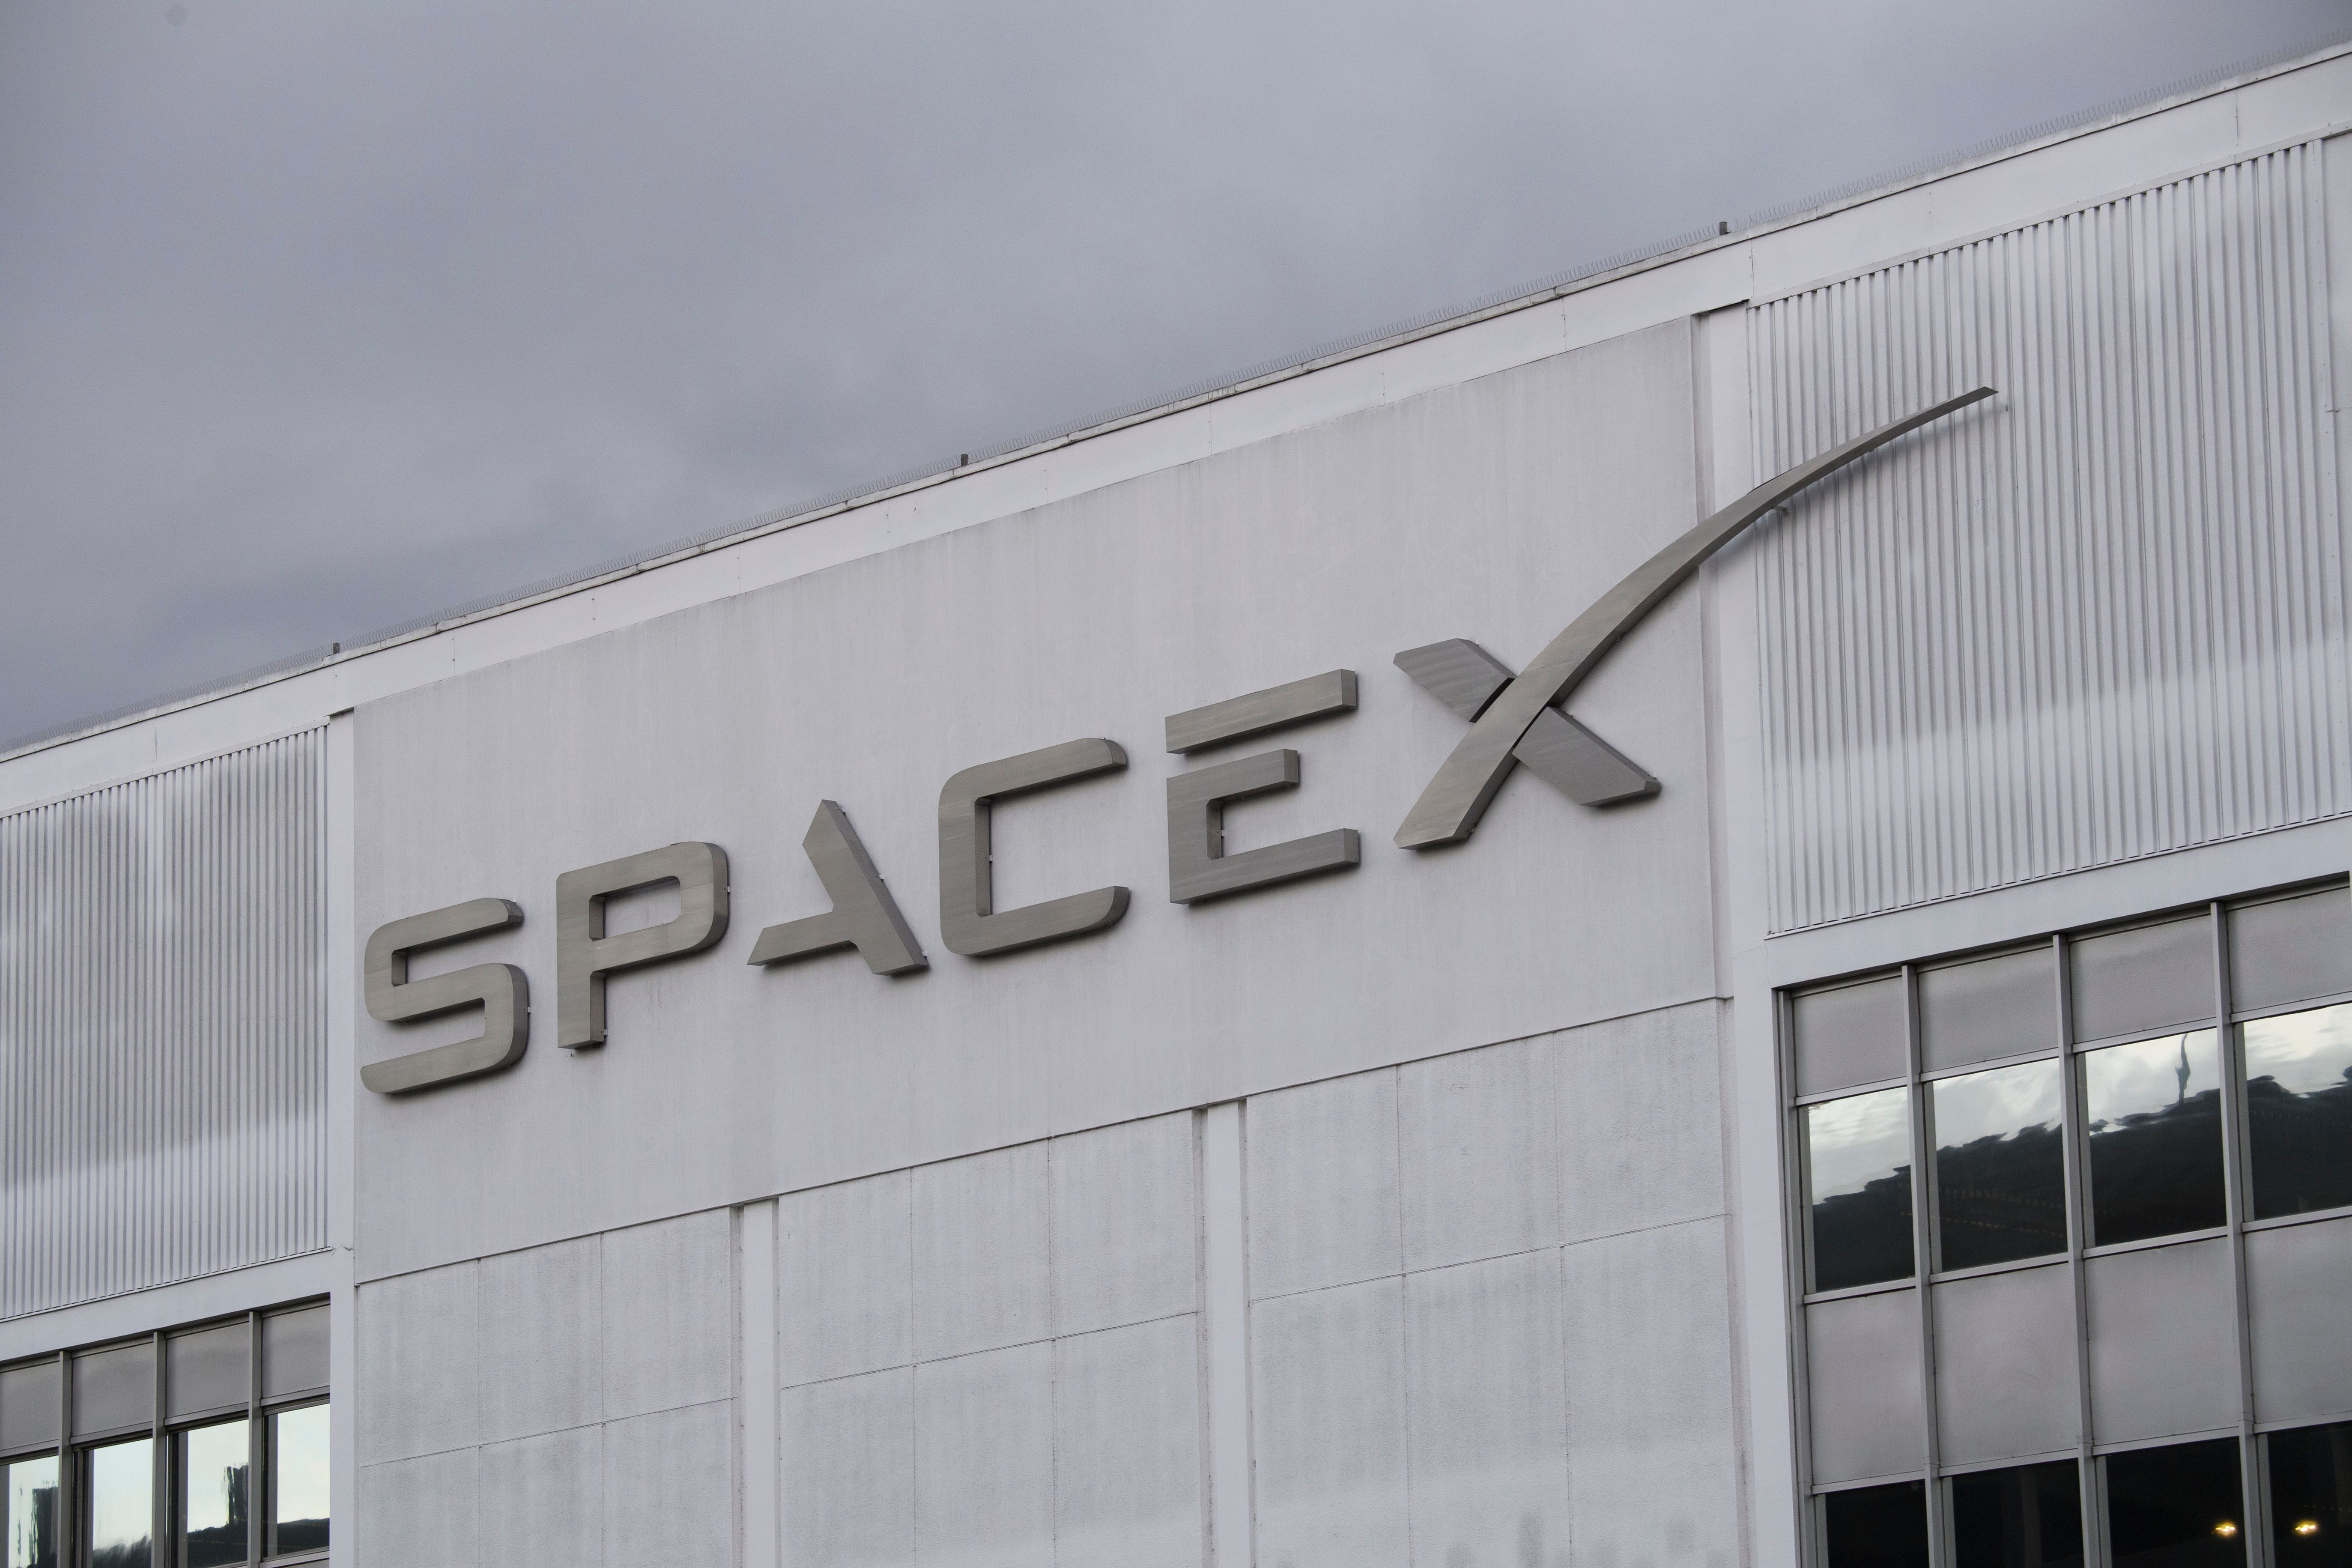 63歲的前SpaceX員工控告公司年齡歧視